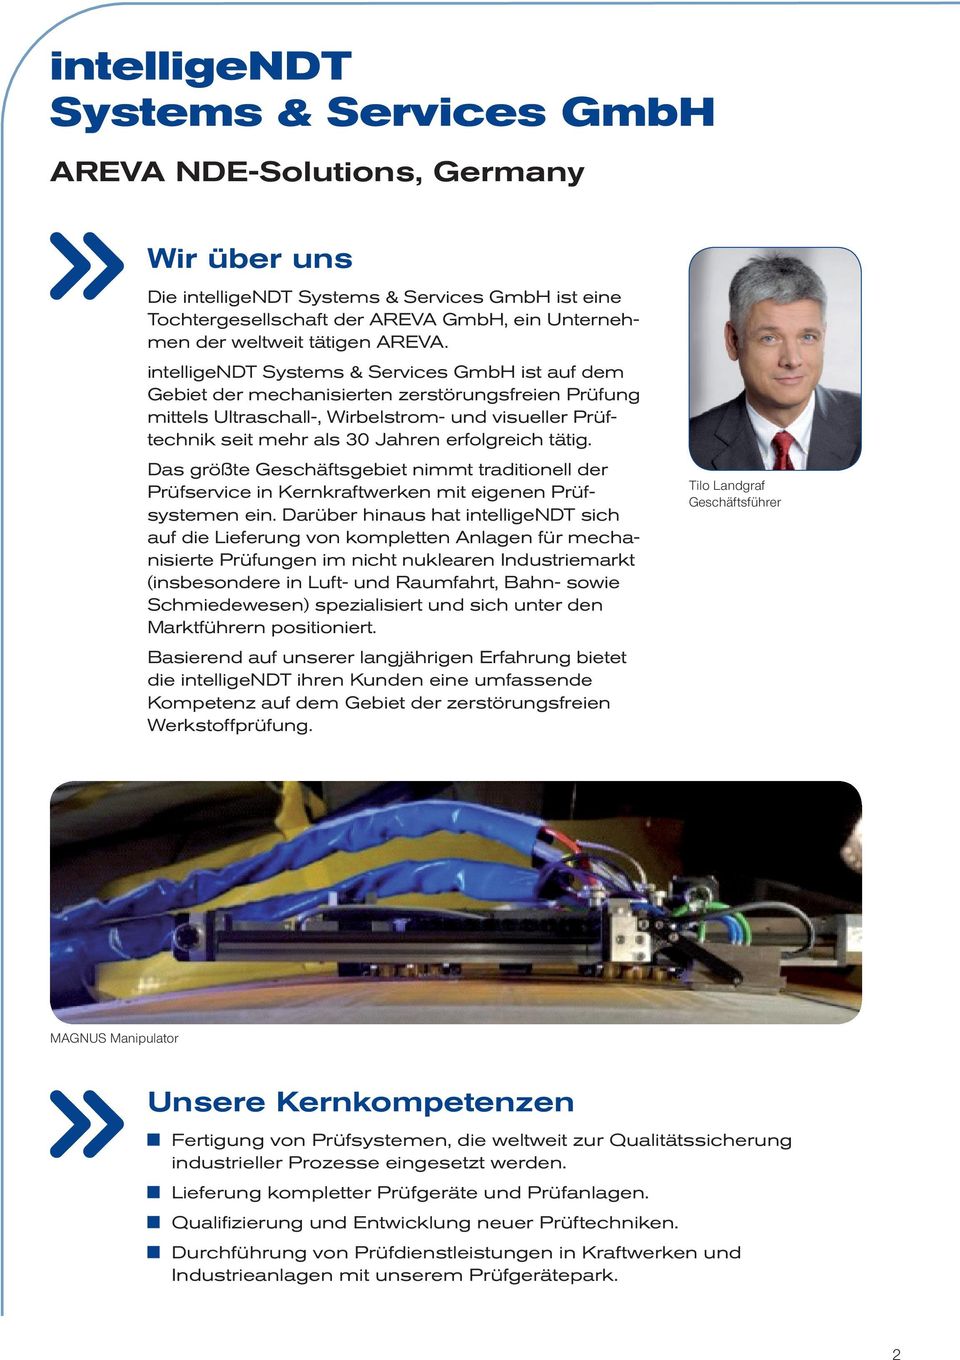 intelligendt Systems & Services GmbH ist auf dem Gebiet der mechanisierten zerstörungsfreien Prüfung mittels Ultraschall-, Wirbelstrom- und visueller Prüftechnik seit mehr als 30 Jahren erfolgreich